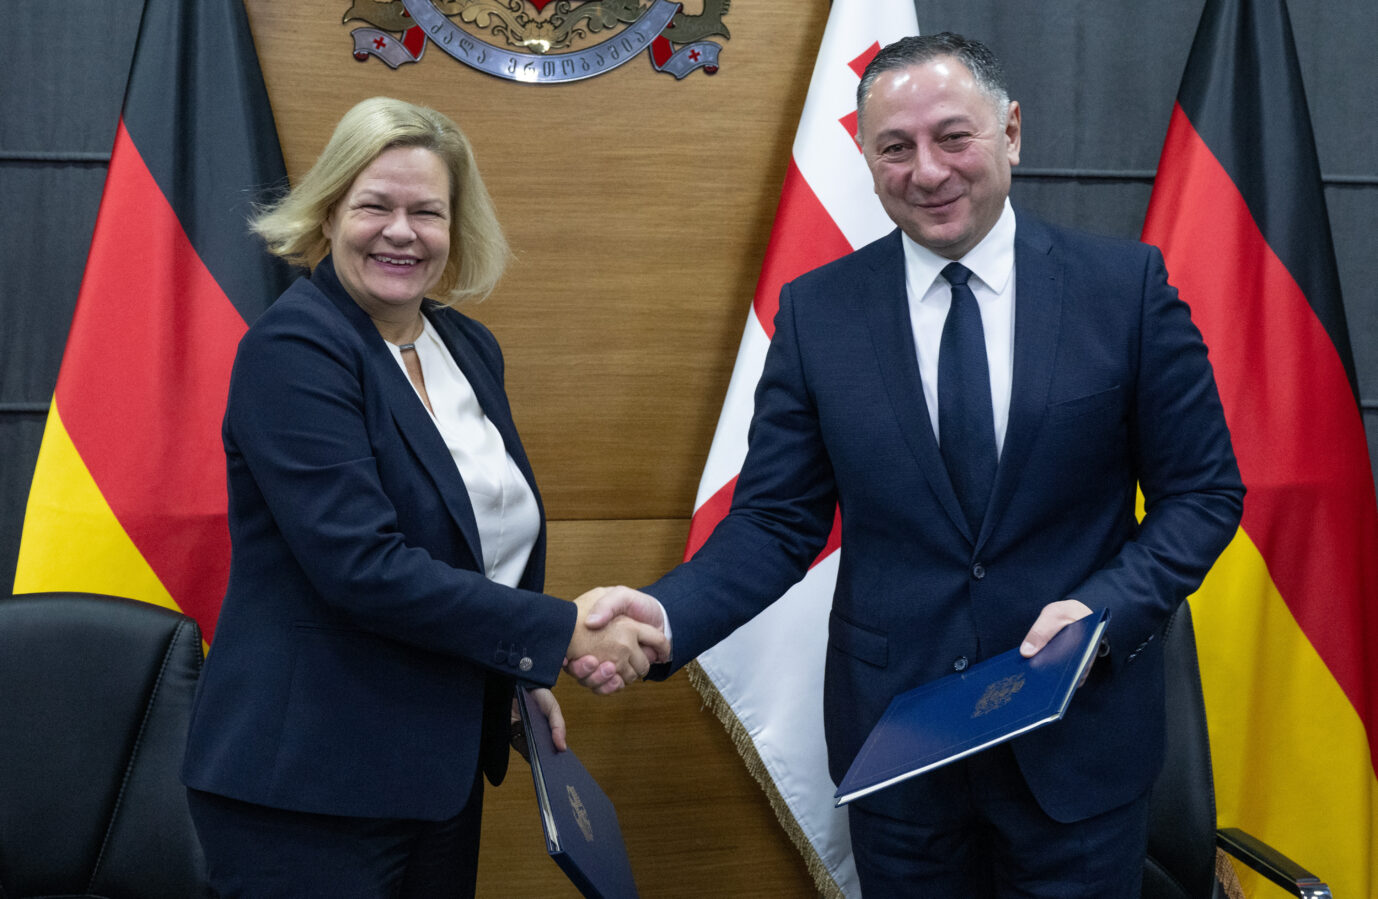 Bundesinnenministerin Nancy Faeser (SPD) und ihr georgischer Amtskollege Vakhtang Gomelauri untereichnen ein gemeinsames Migrationsabkommen: Deutschland und Georgien wollen illegale Einwanderung begrenzen und zugleich wirtschaftlich enger zusammenarbeiten.